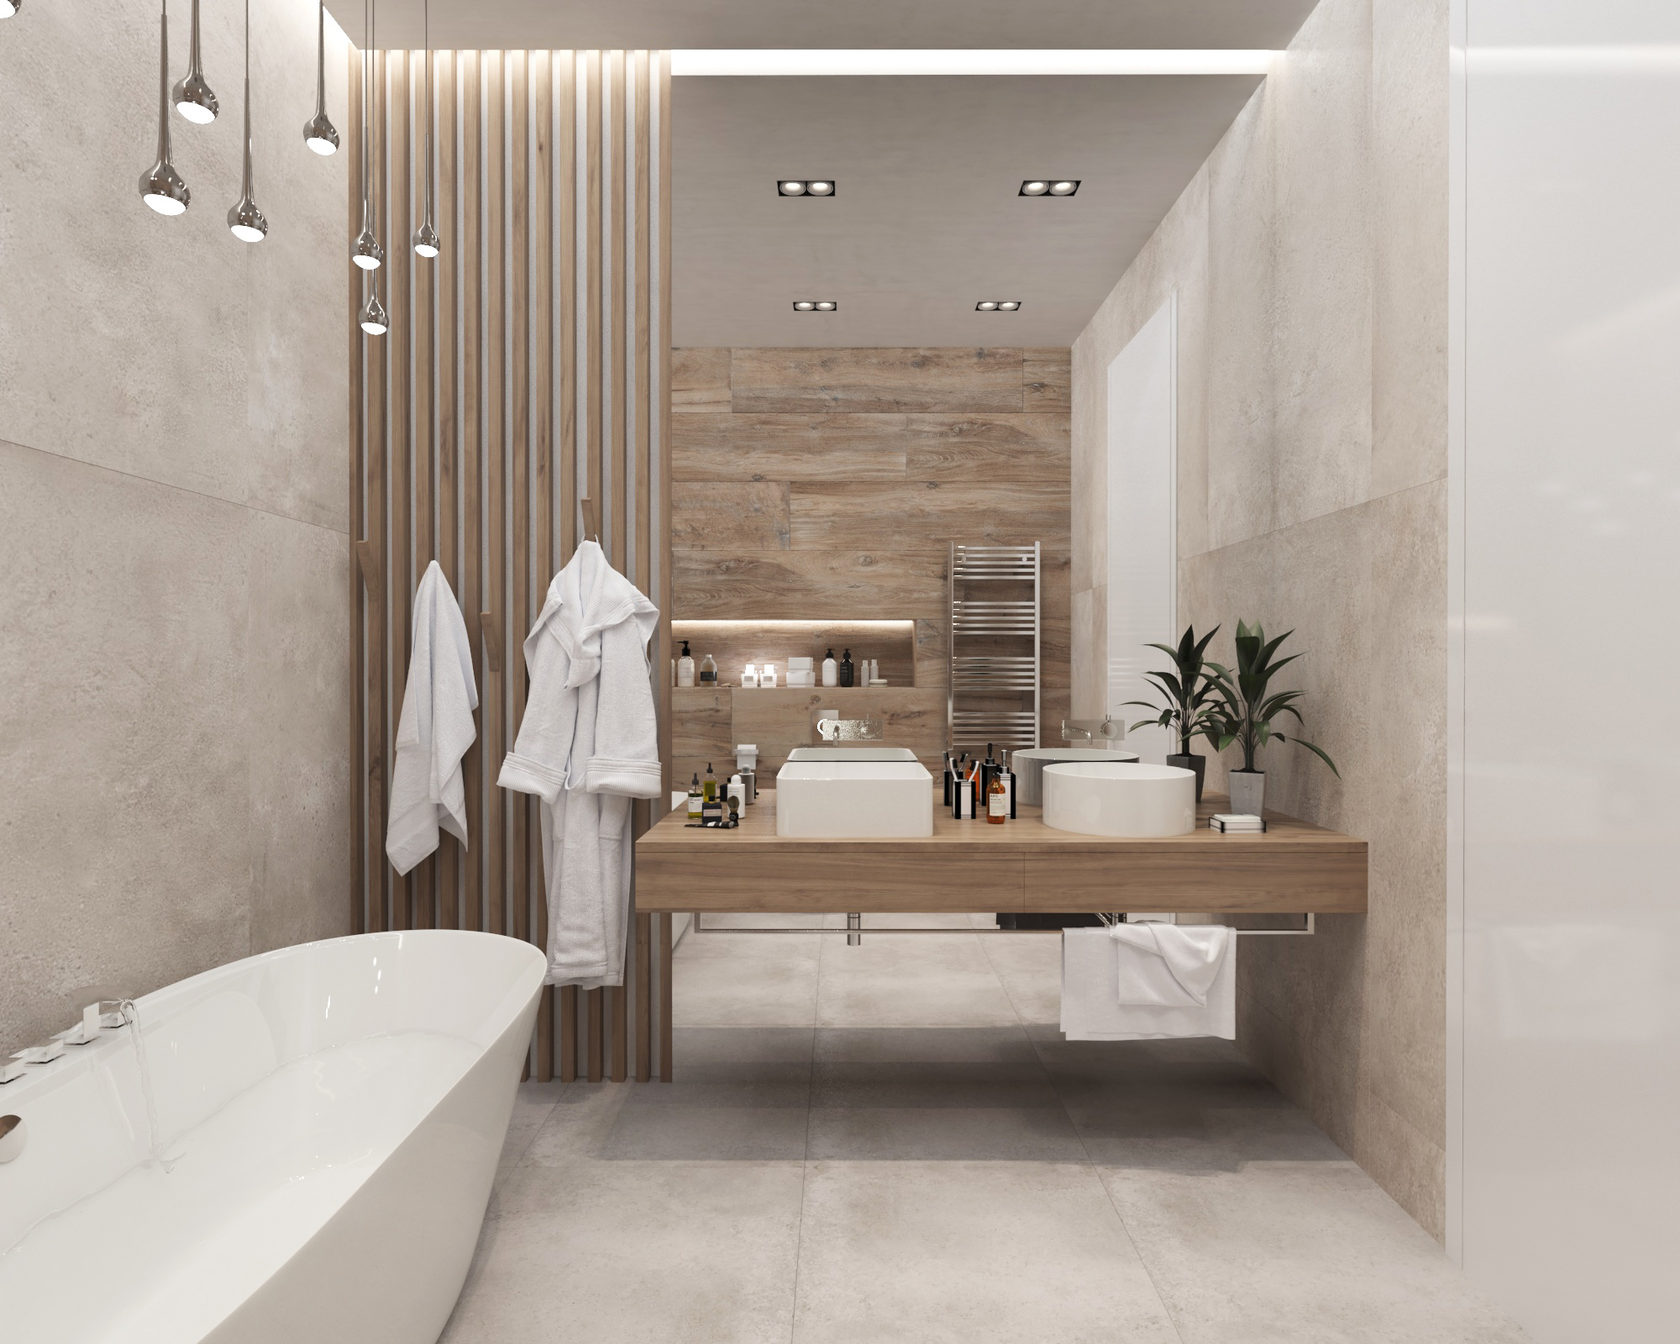 Заказать дизайн проект ванной комнаты под ключ в Москве - цена от рублей в студии MartynDesign